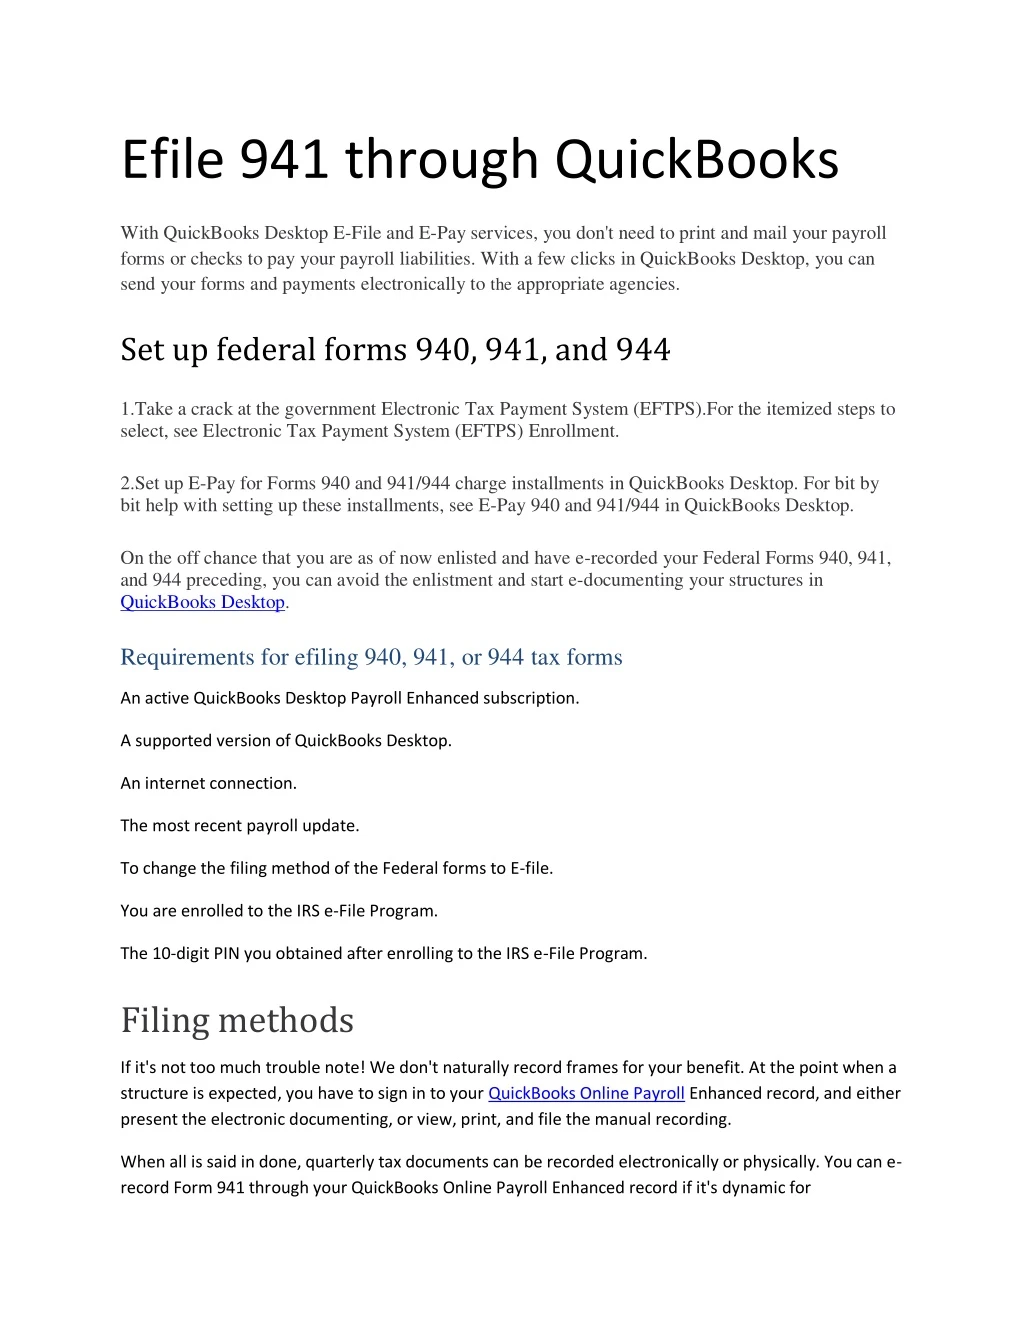 efile 941 through quickbooks